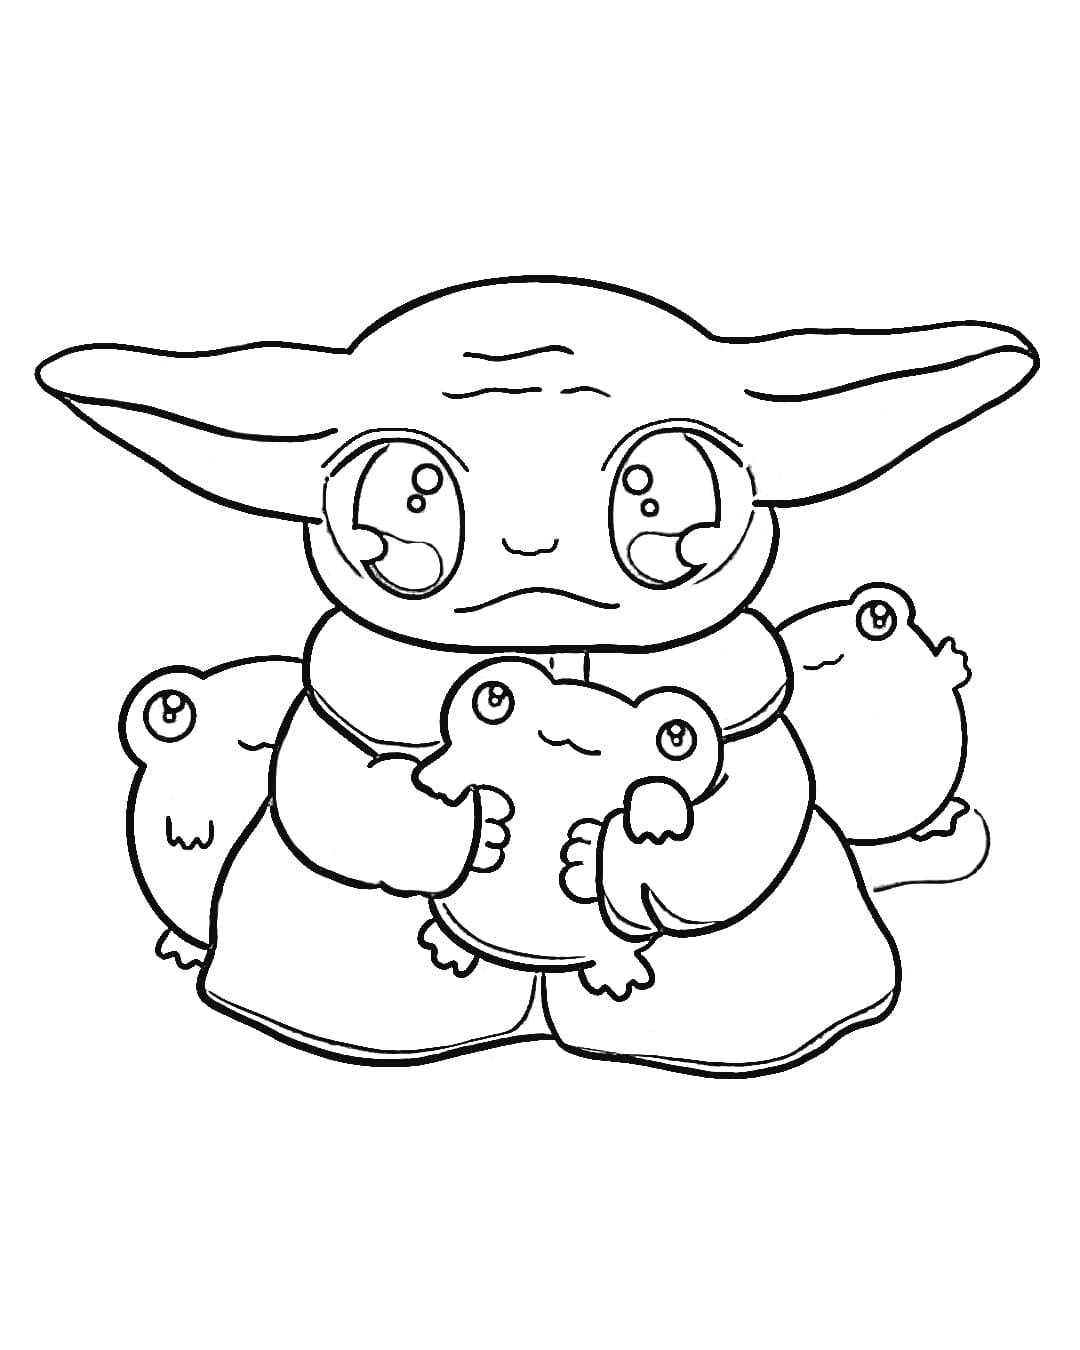 Coloring page Baby Yoda Kawaii